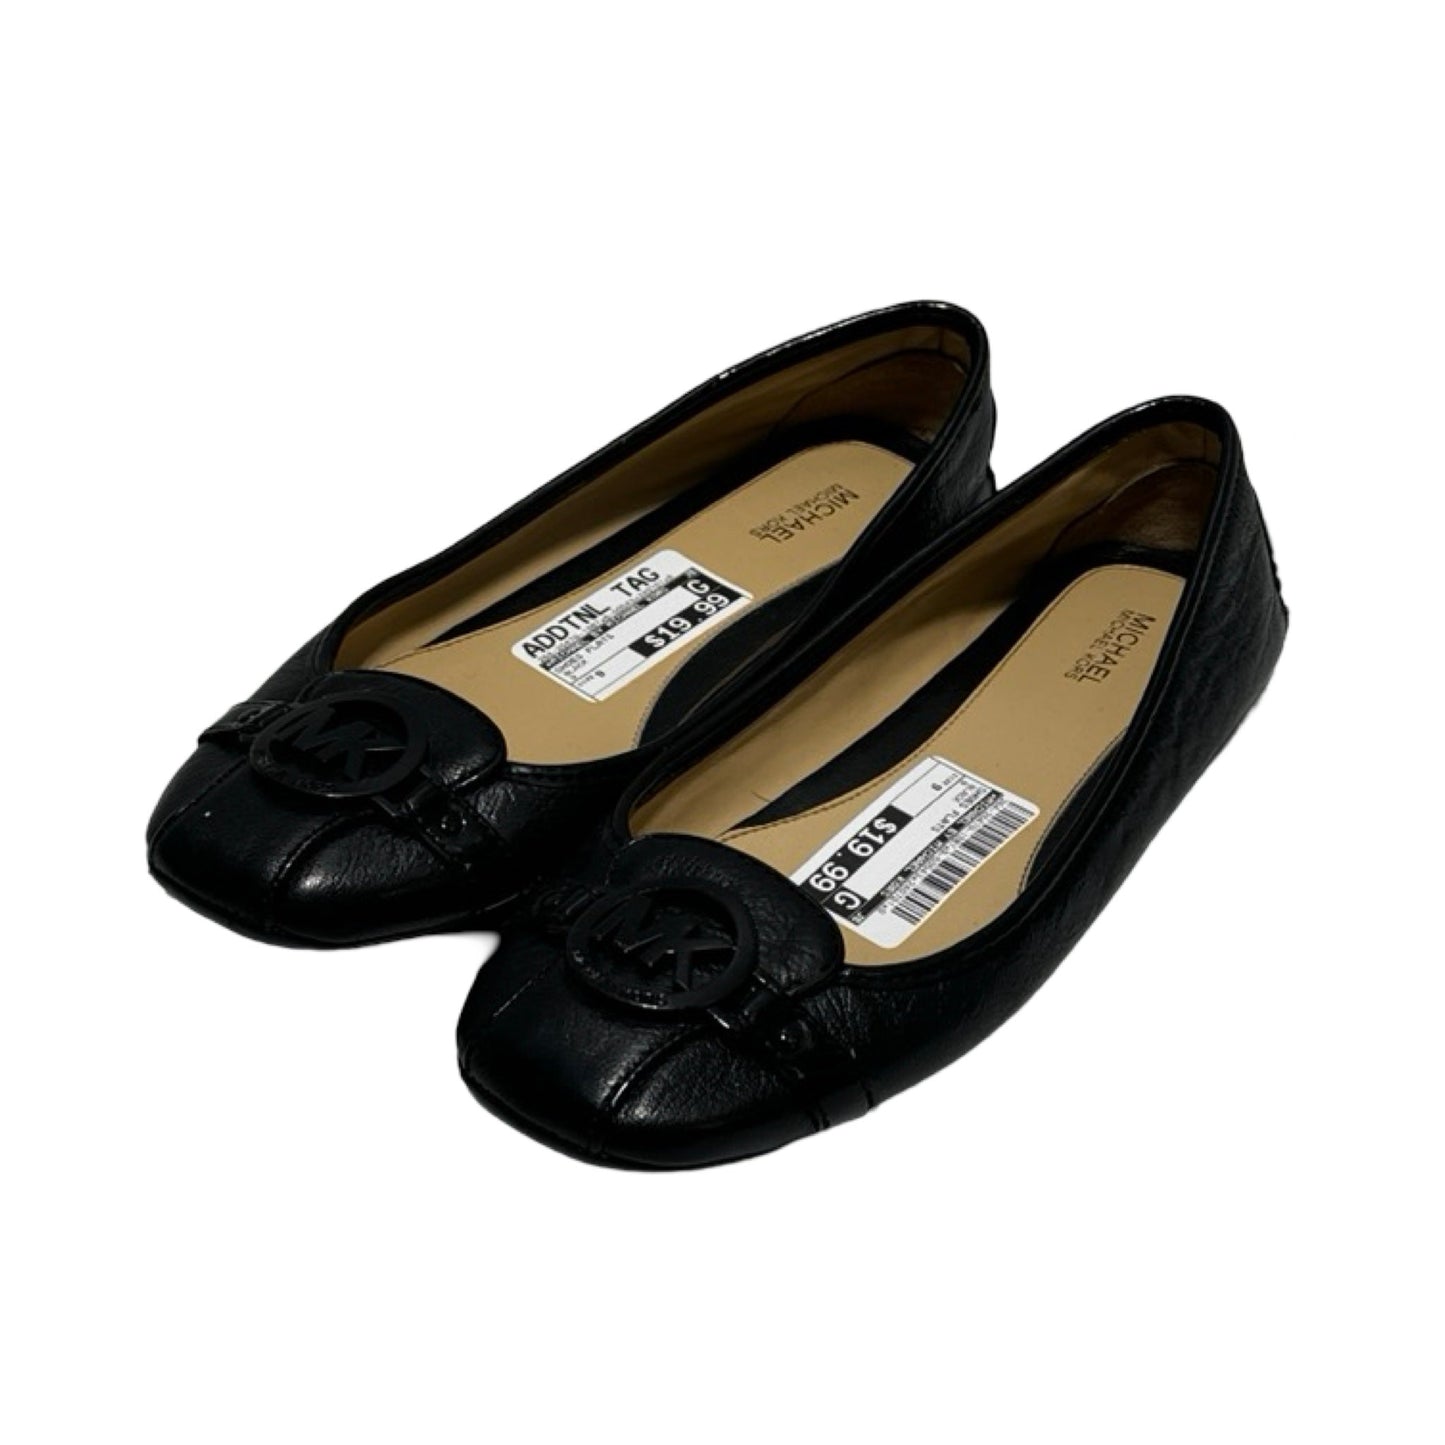 Black Shoes Flats Designer Michael By Michael Kors, Size 9